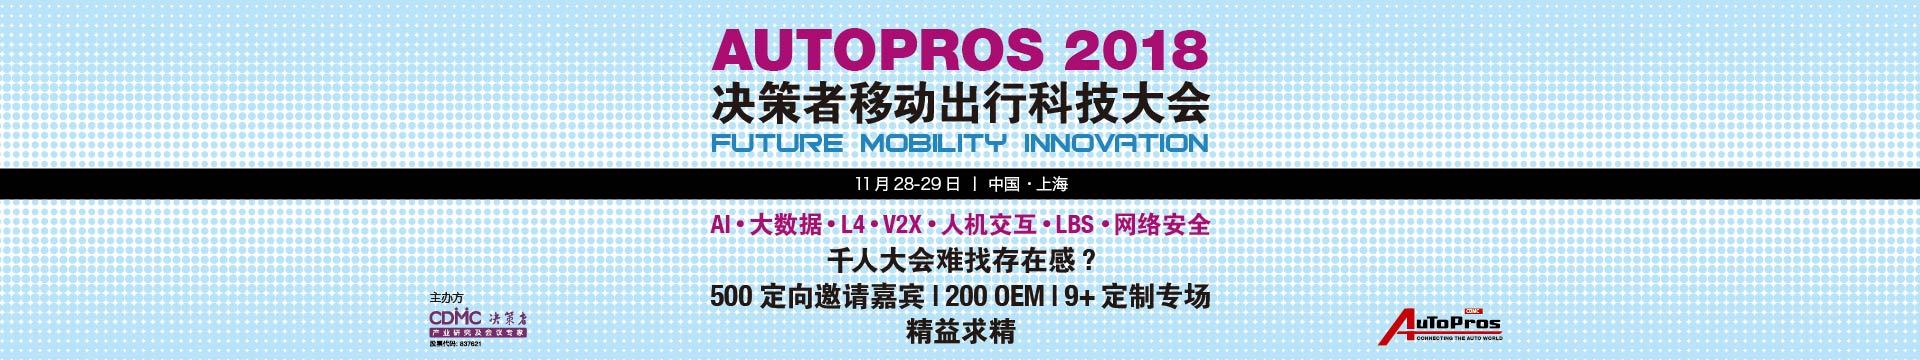 Autopros2018 决策者移动出行科技大会